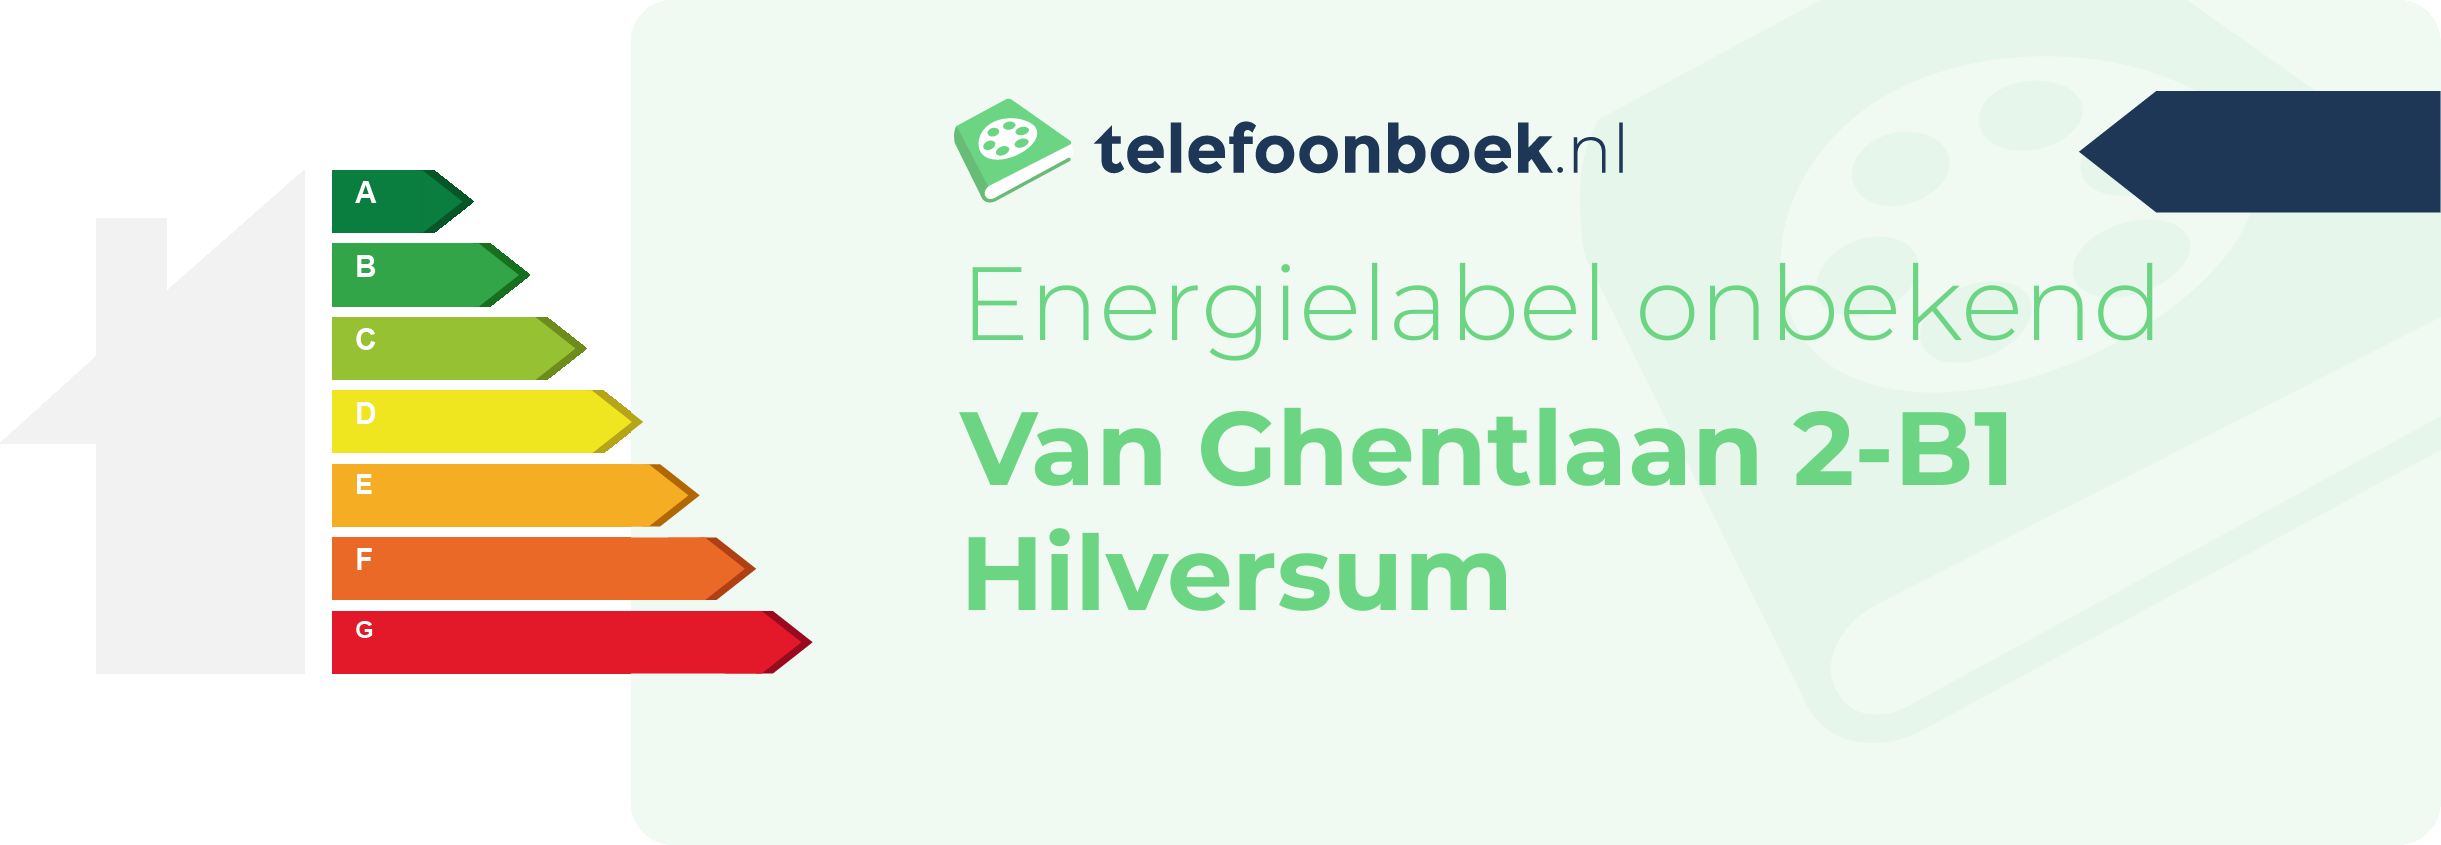 Energielabel Van Ghentlaan 2-B1 Hilversum